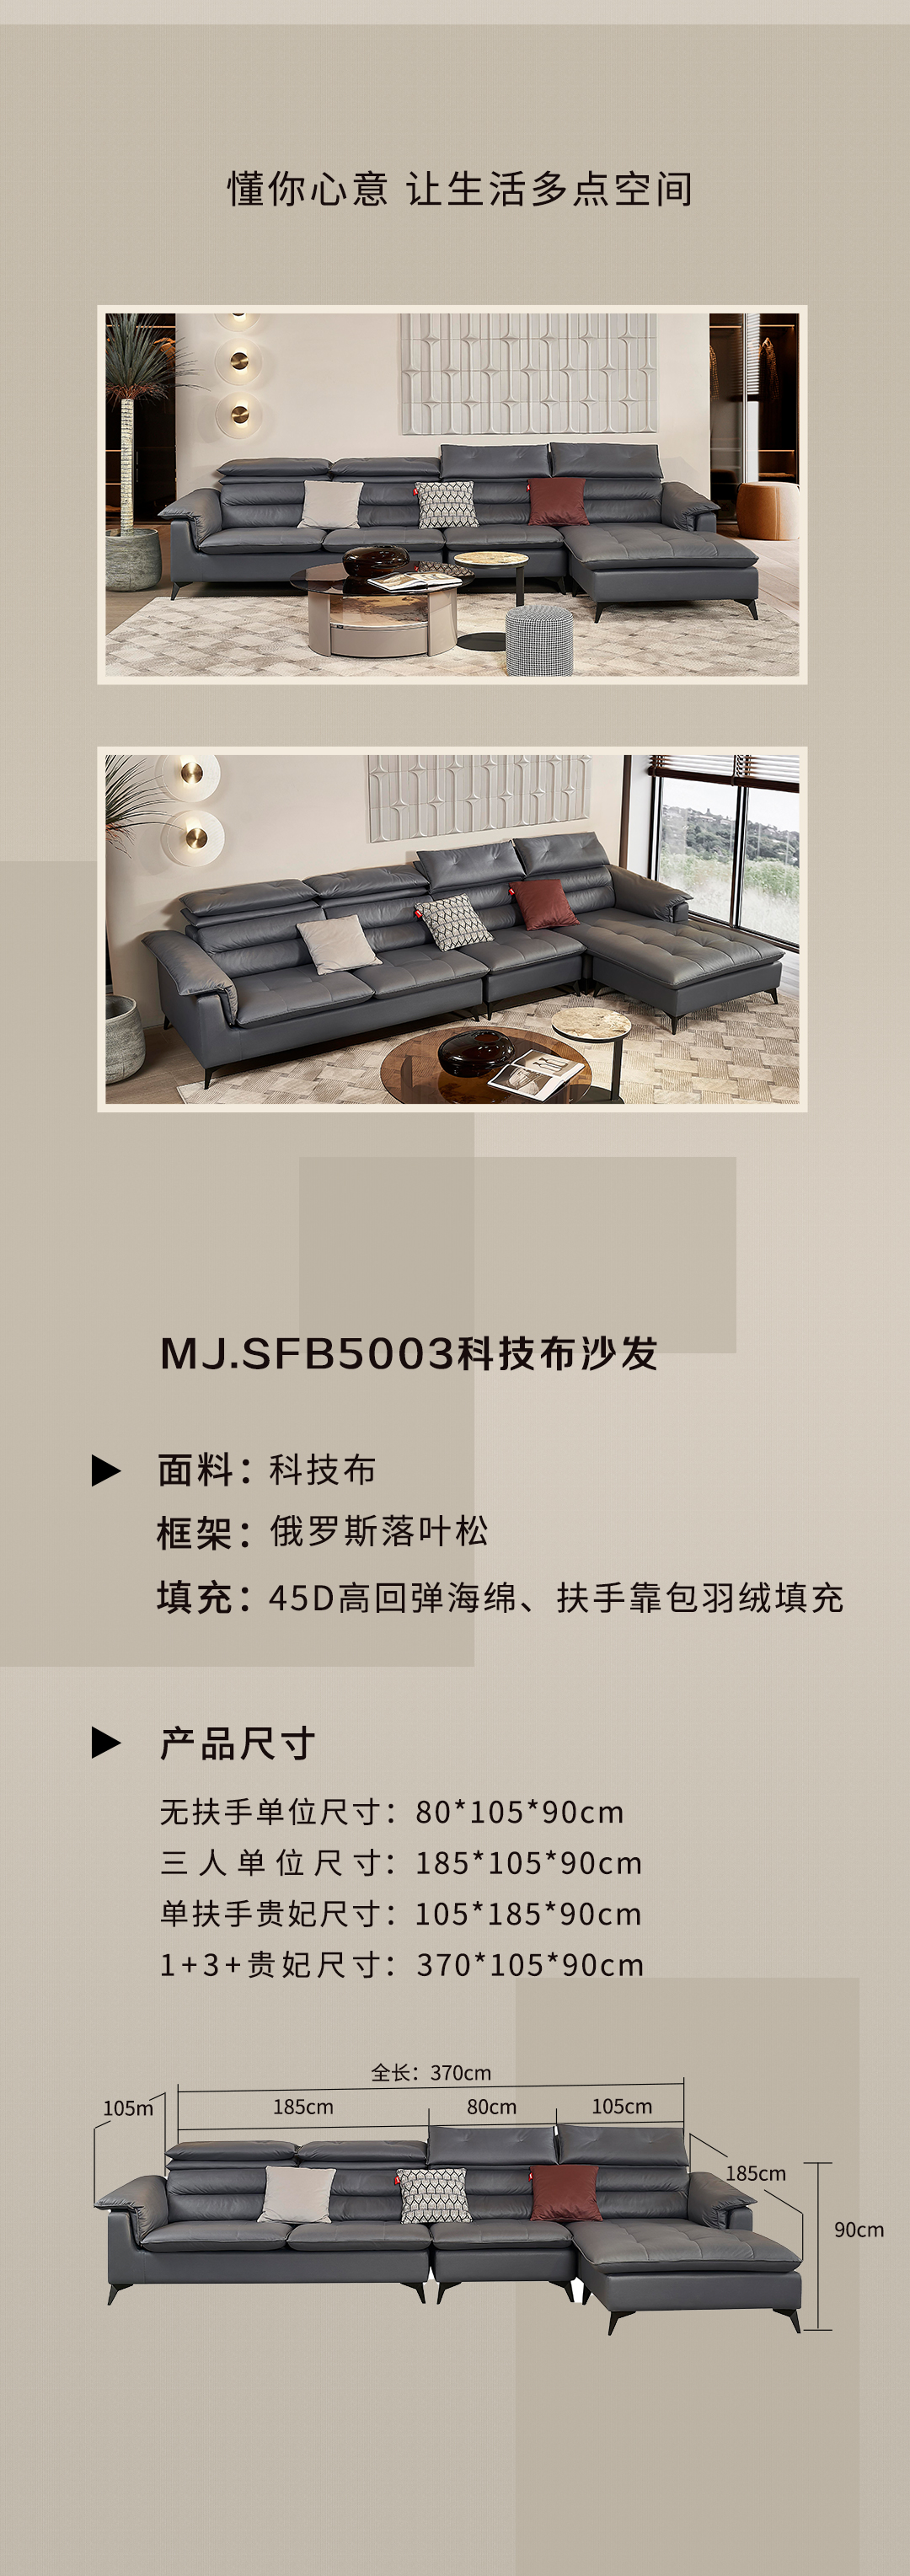 新品上市|MJ.SFB5003沙发 舒适得像另一张床